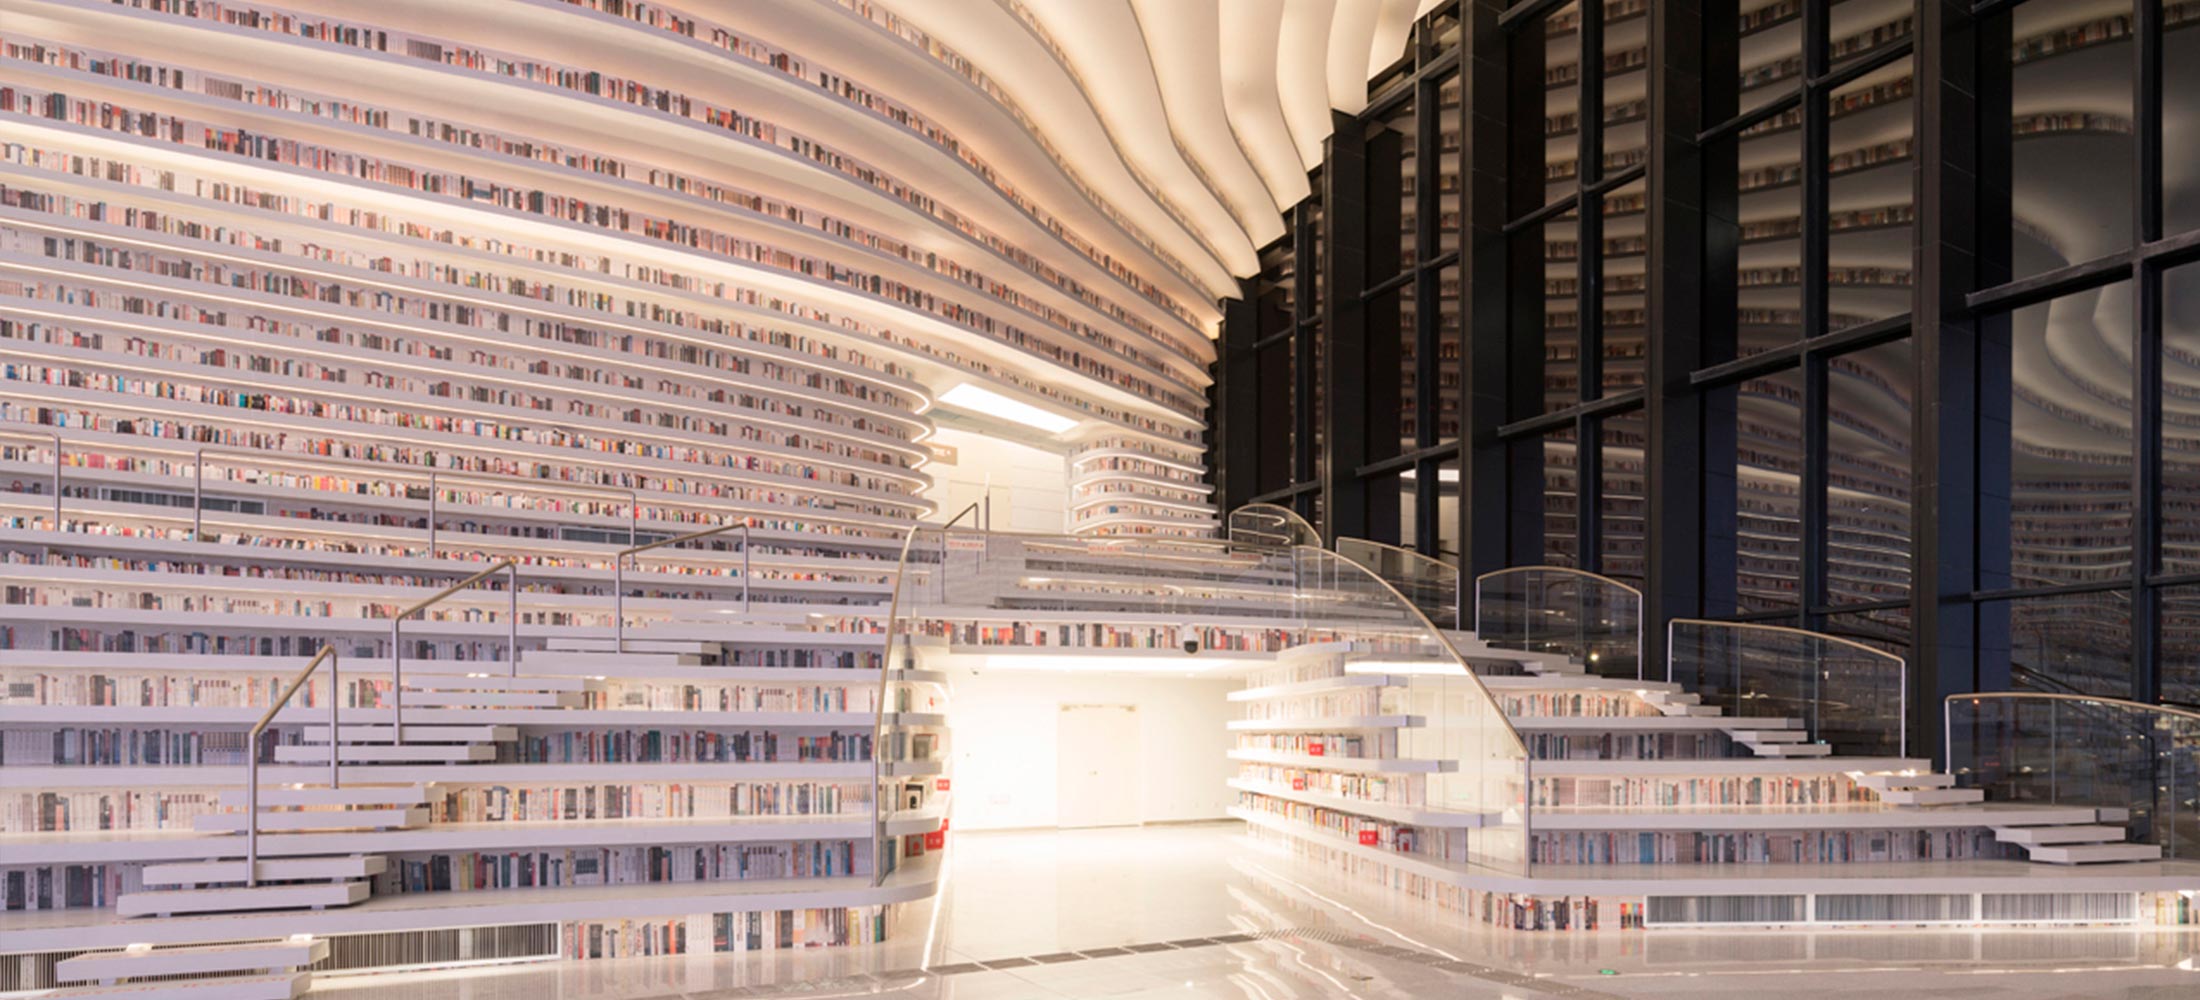 Фантастическая библиотека в Китае от MVRDV